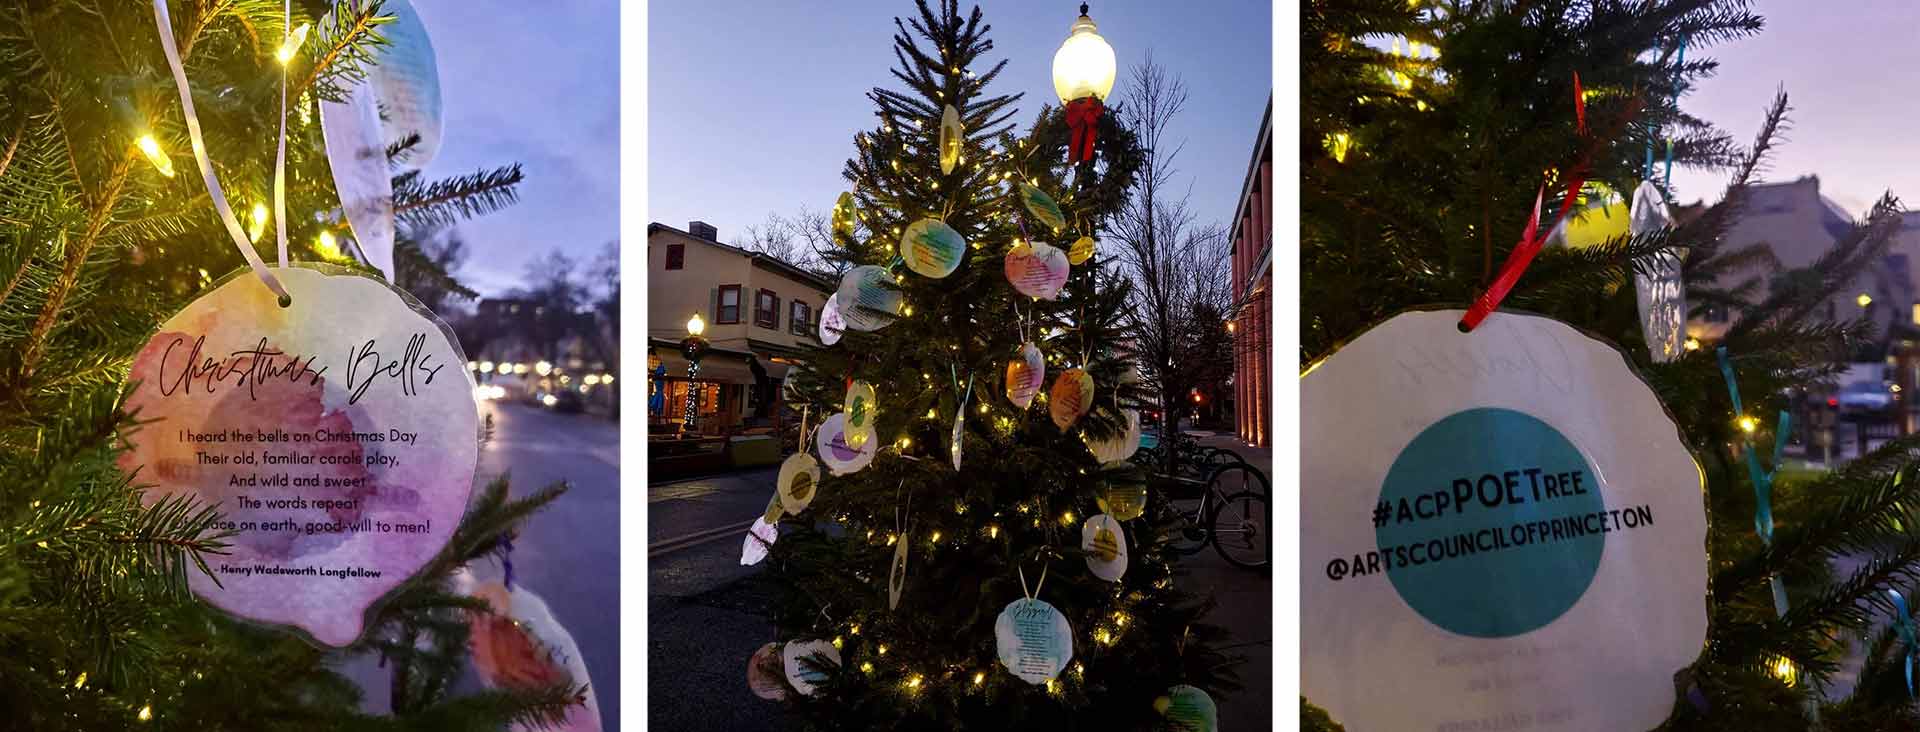 slider public art holiday tree